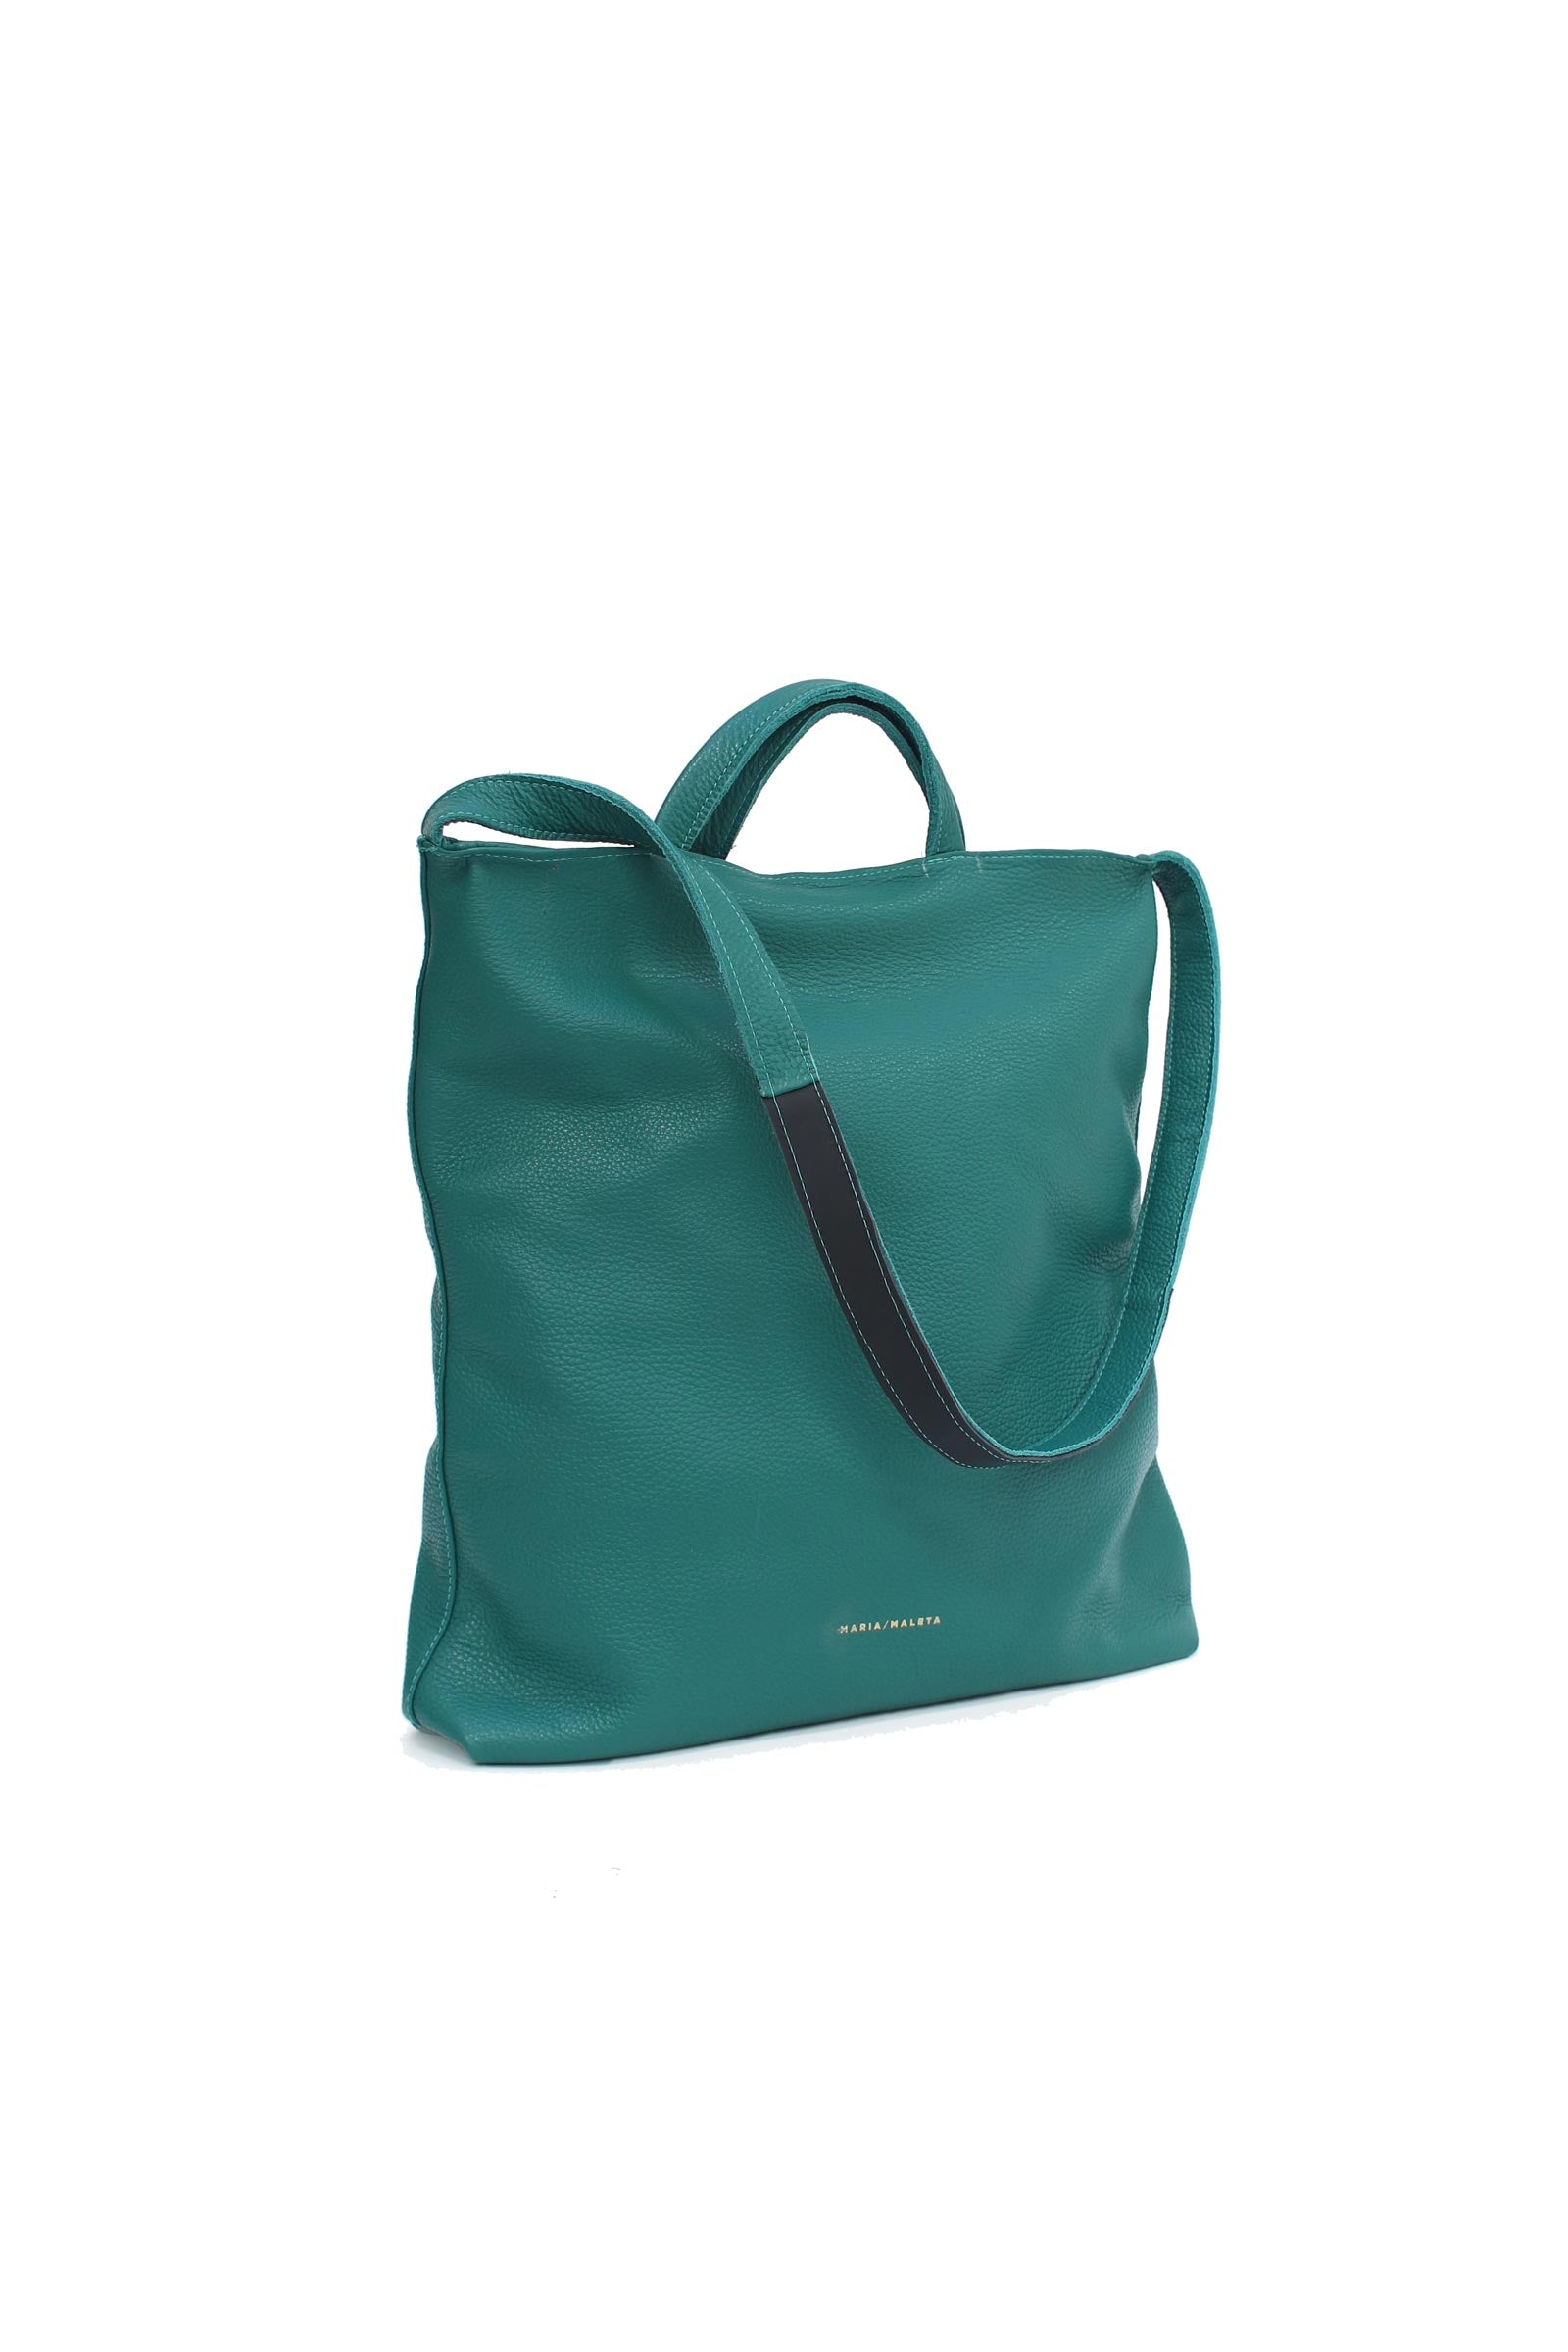 Women’s Shopping Bag - Green One Size Maria Maleta